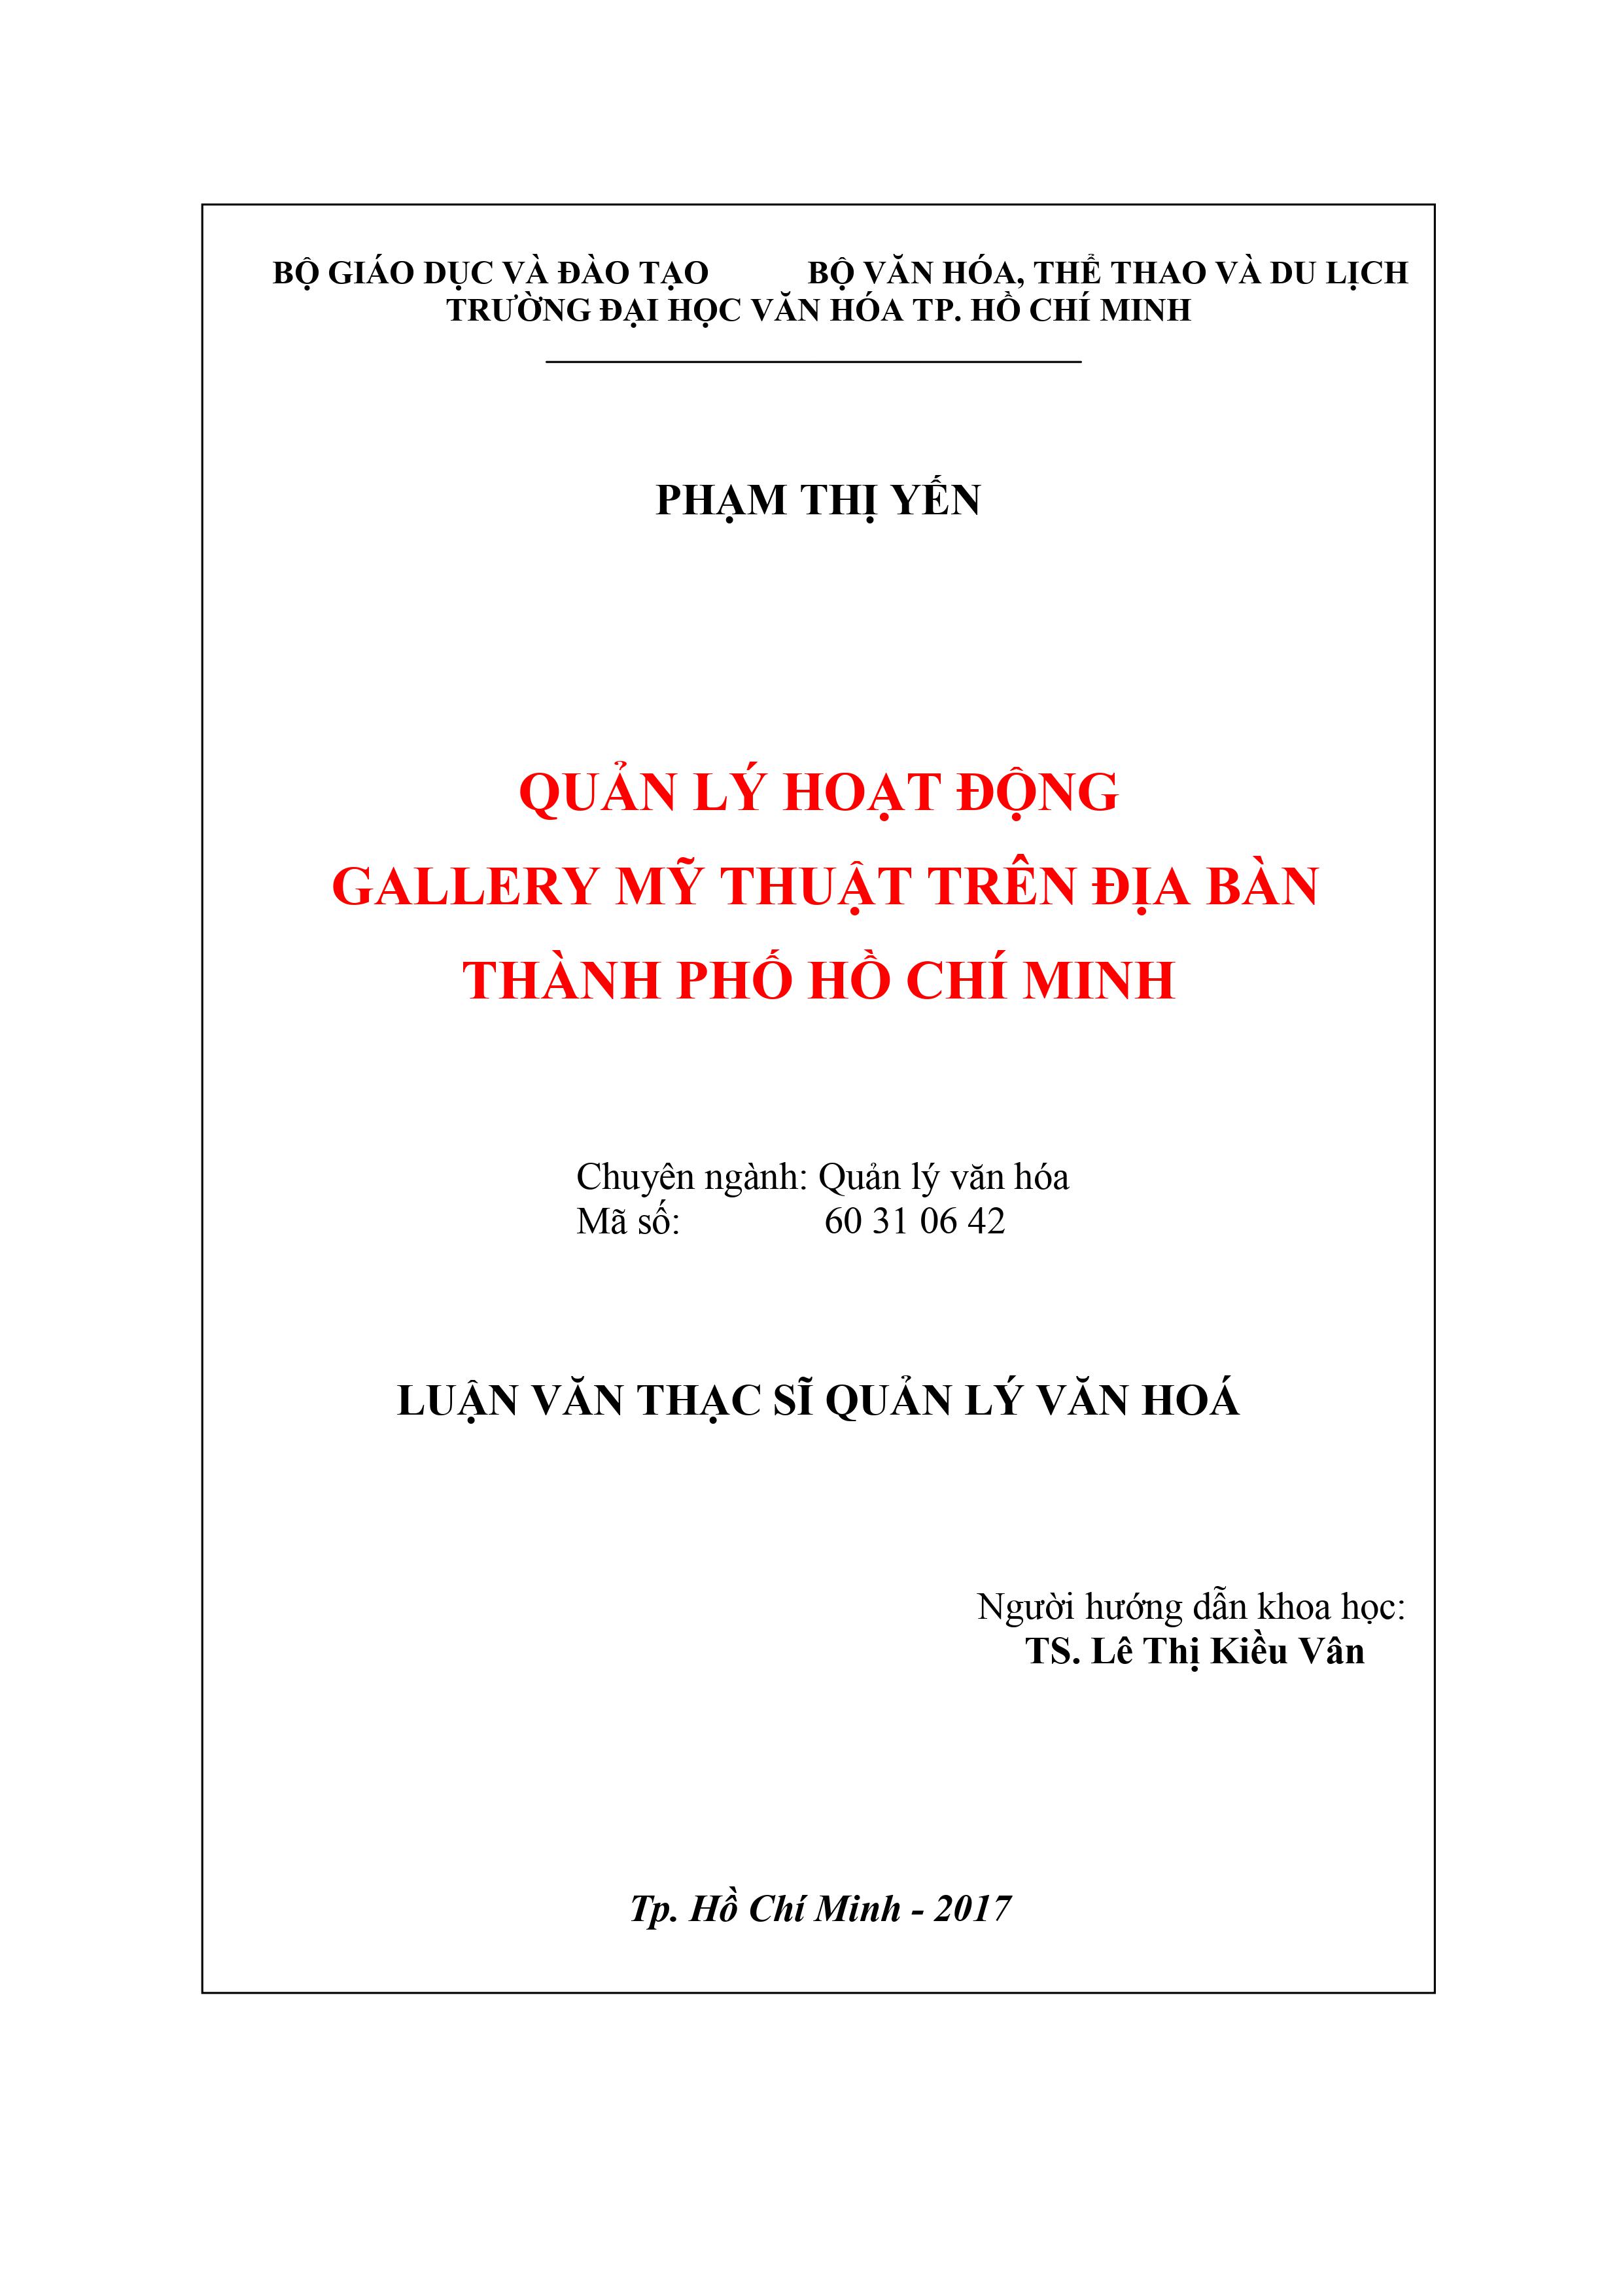 Quản lý hoạt động Gallery mỹ thuật trên địa bàn Thành phố Hồ Chí Minh